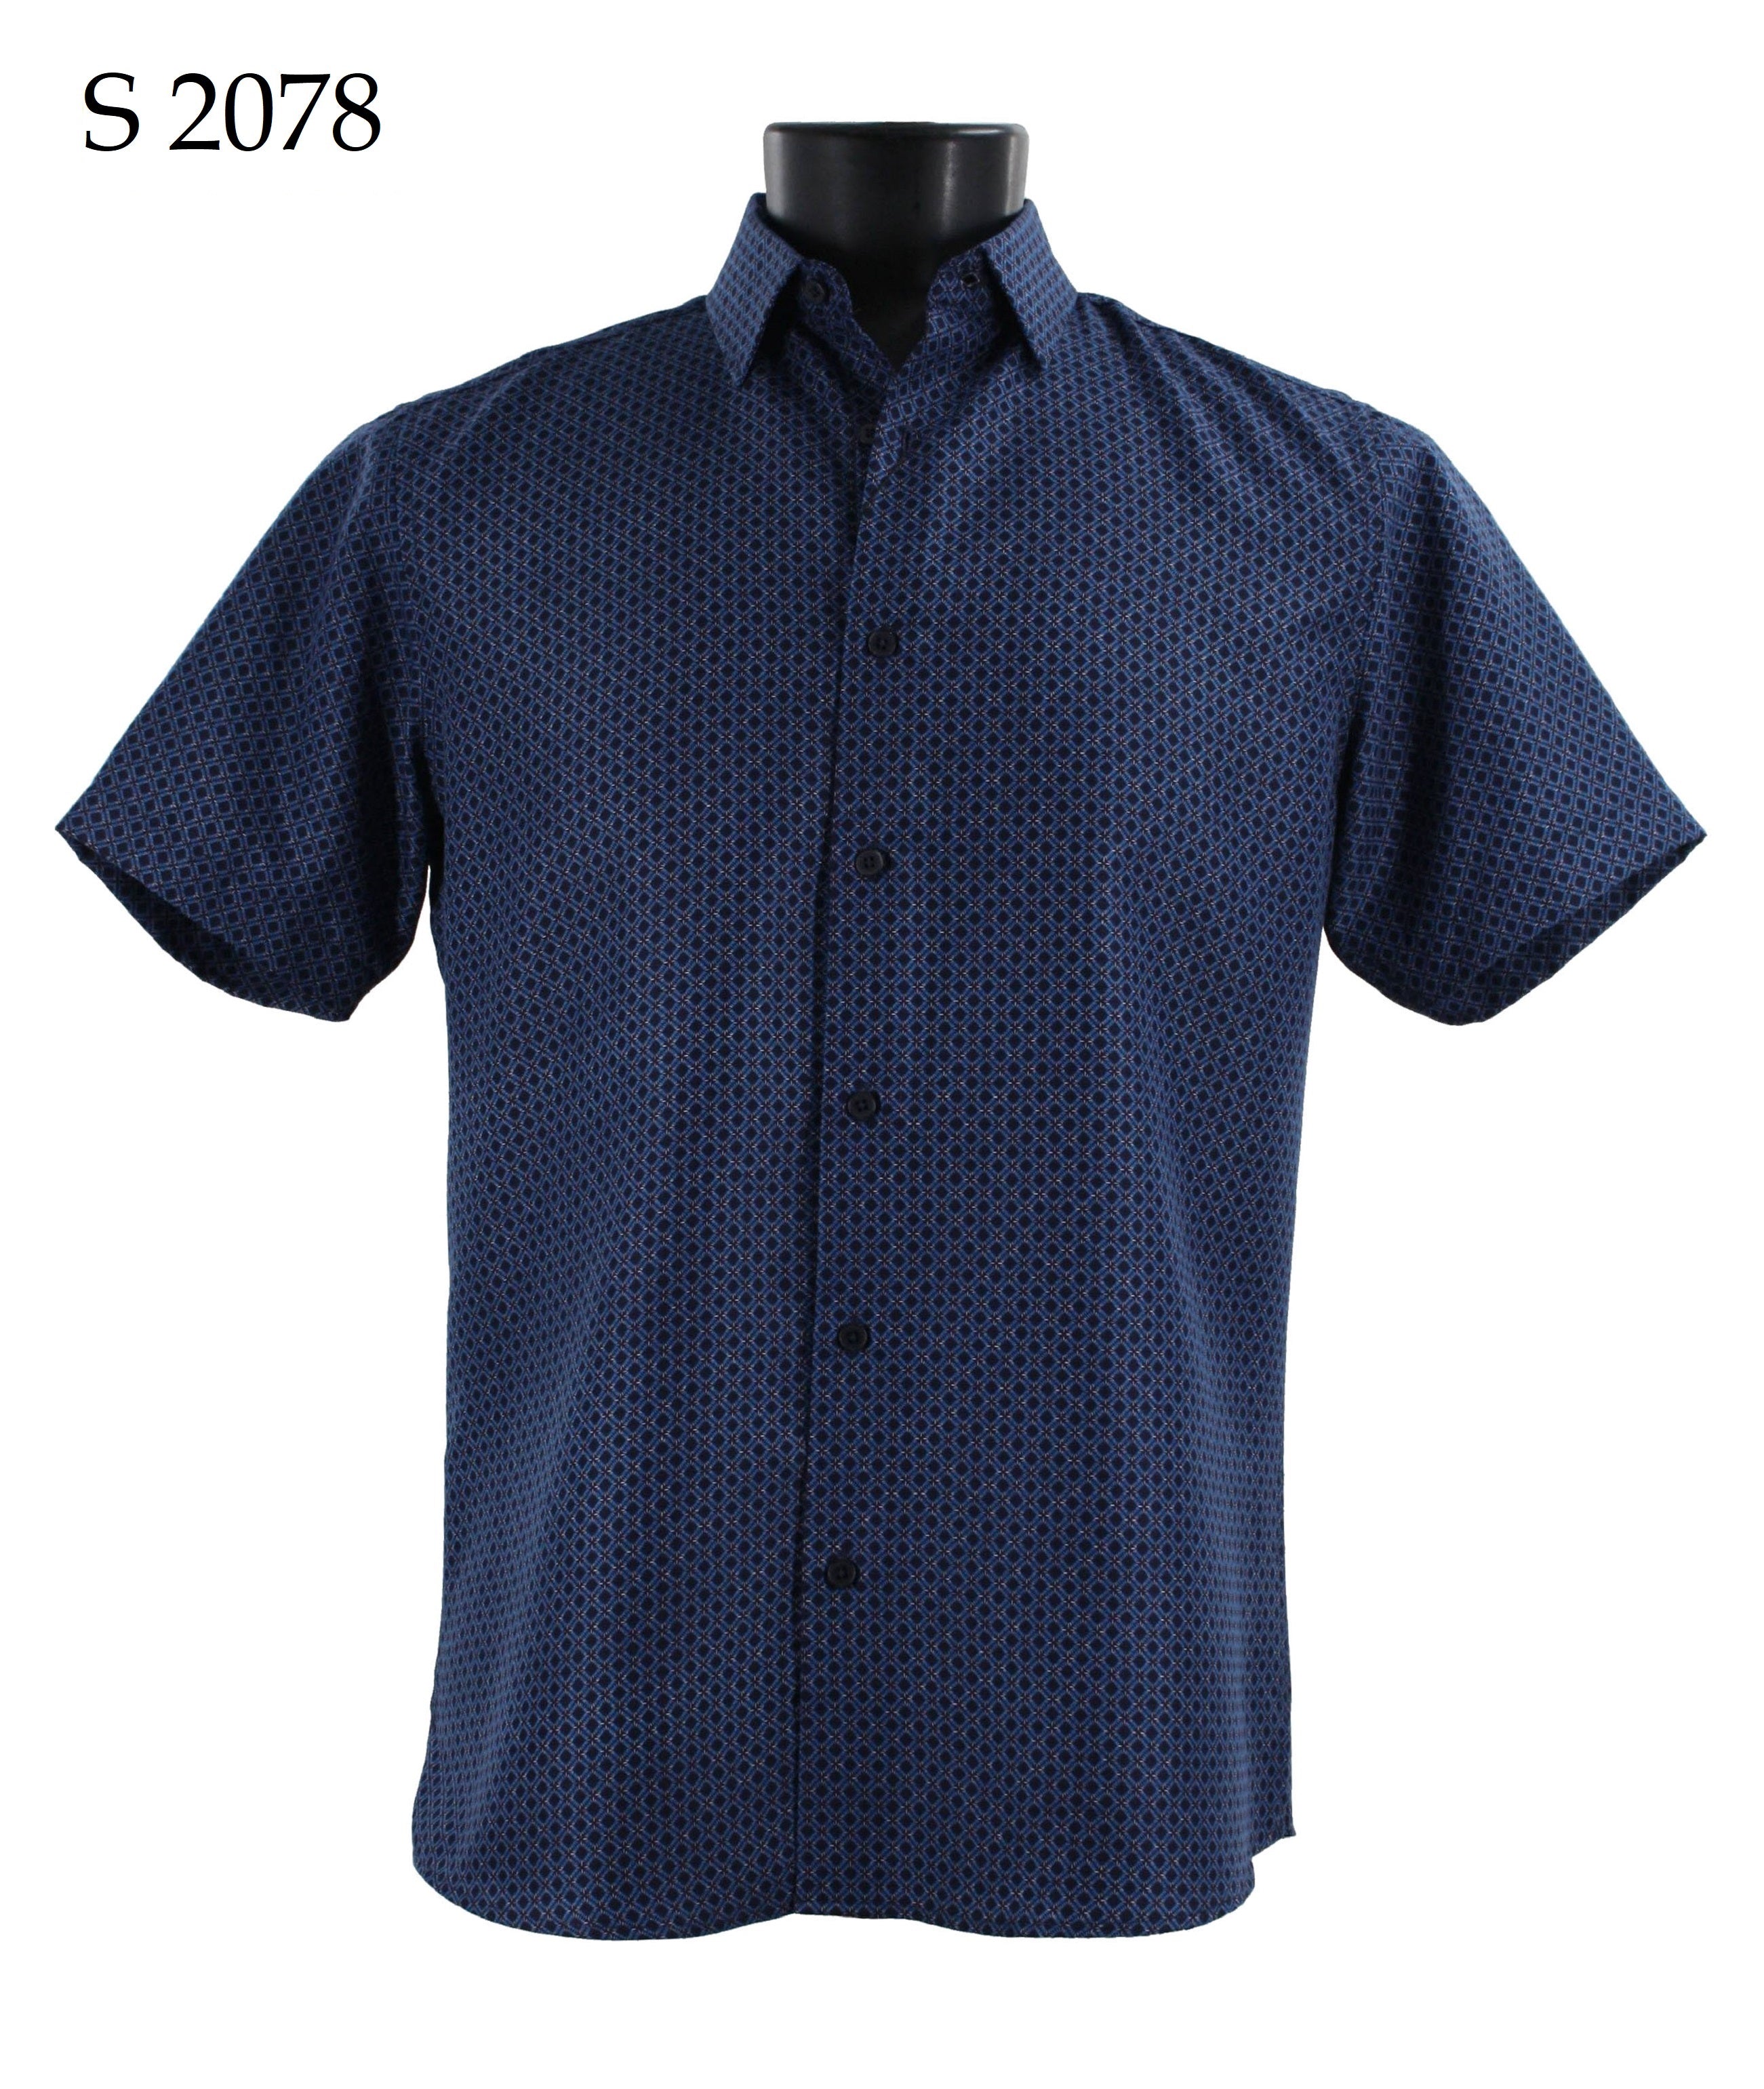 Sangi Short Sleeve Shirt S 2078